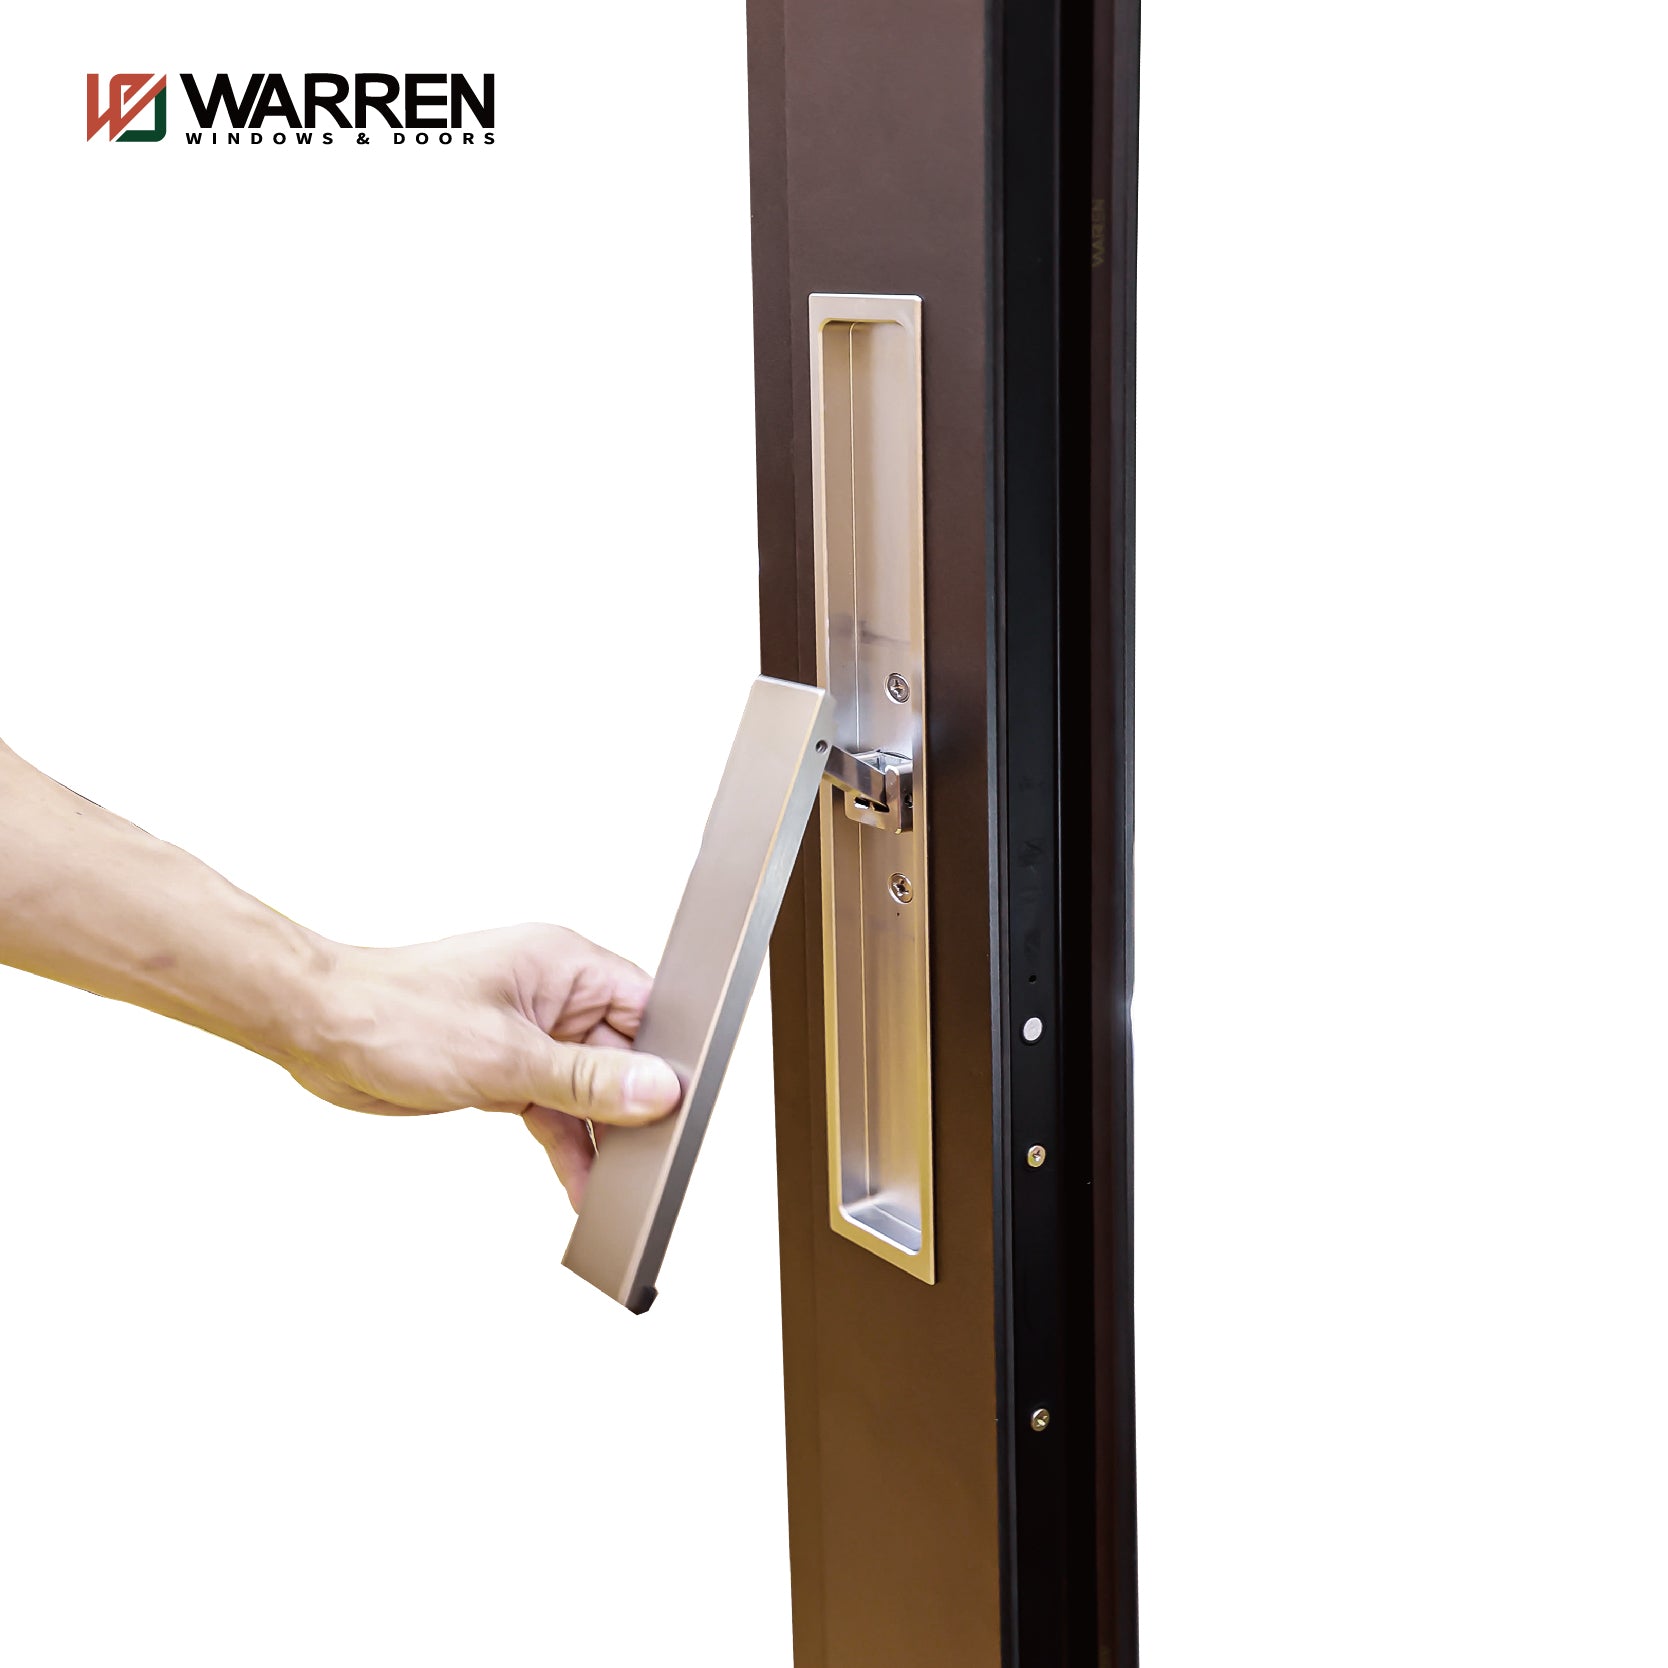 Warren New China Manufacturer Double Glass Interior Sliding Glass Door Aluminium Sliding Door